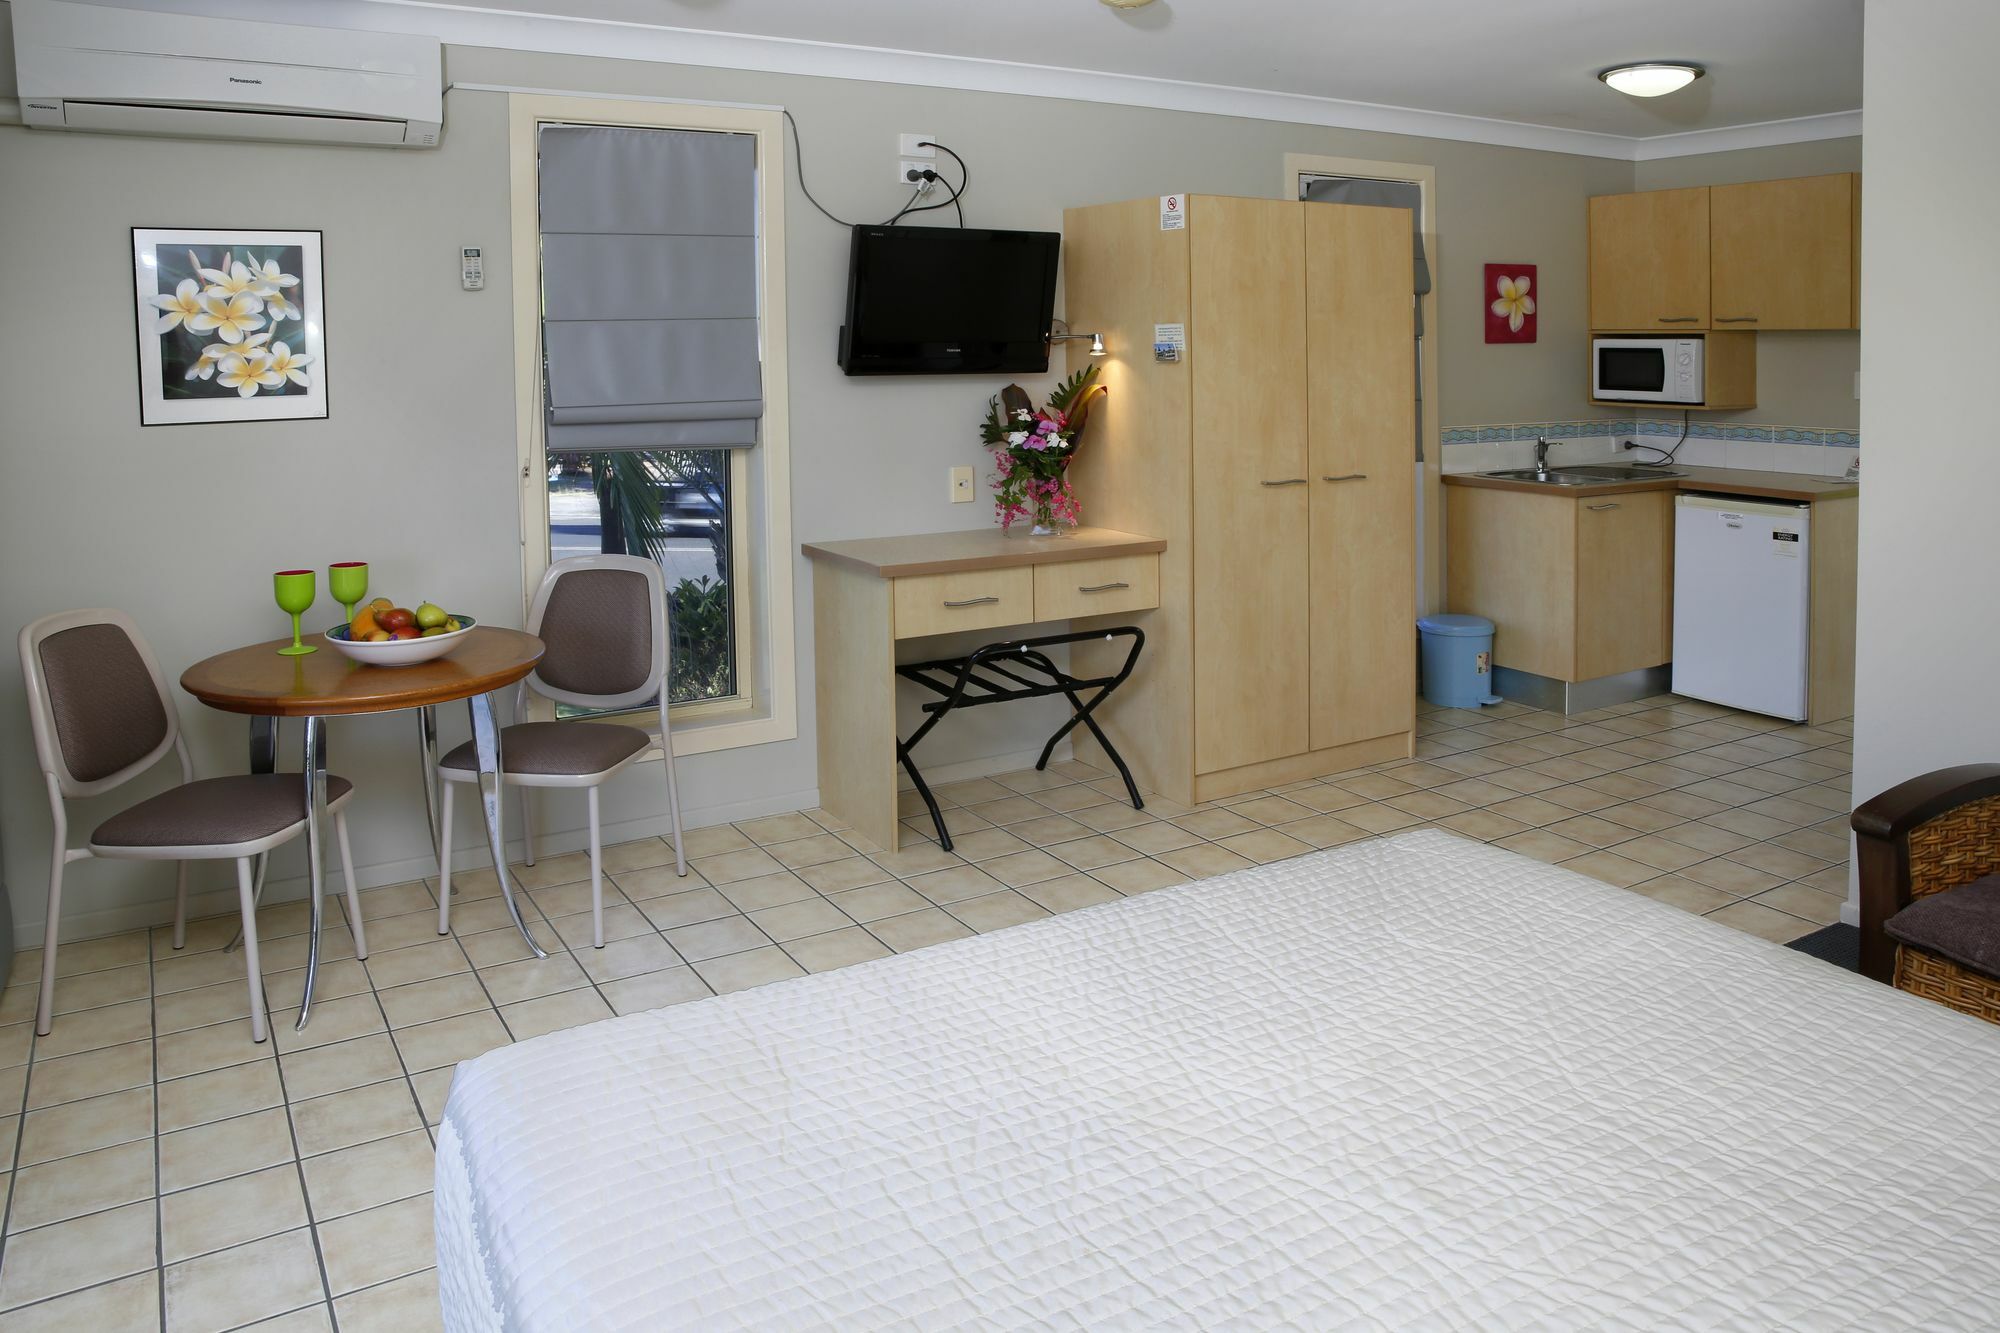 Yamba Sun Motel Exteriör bild